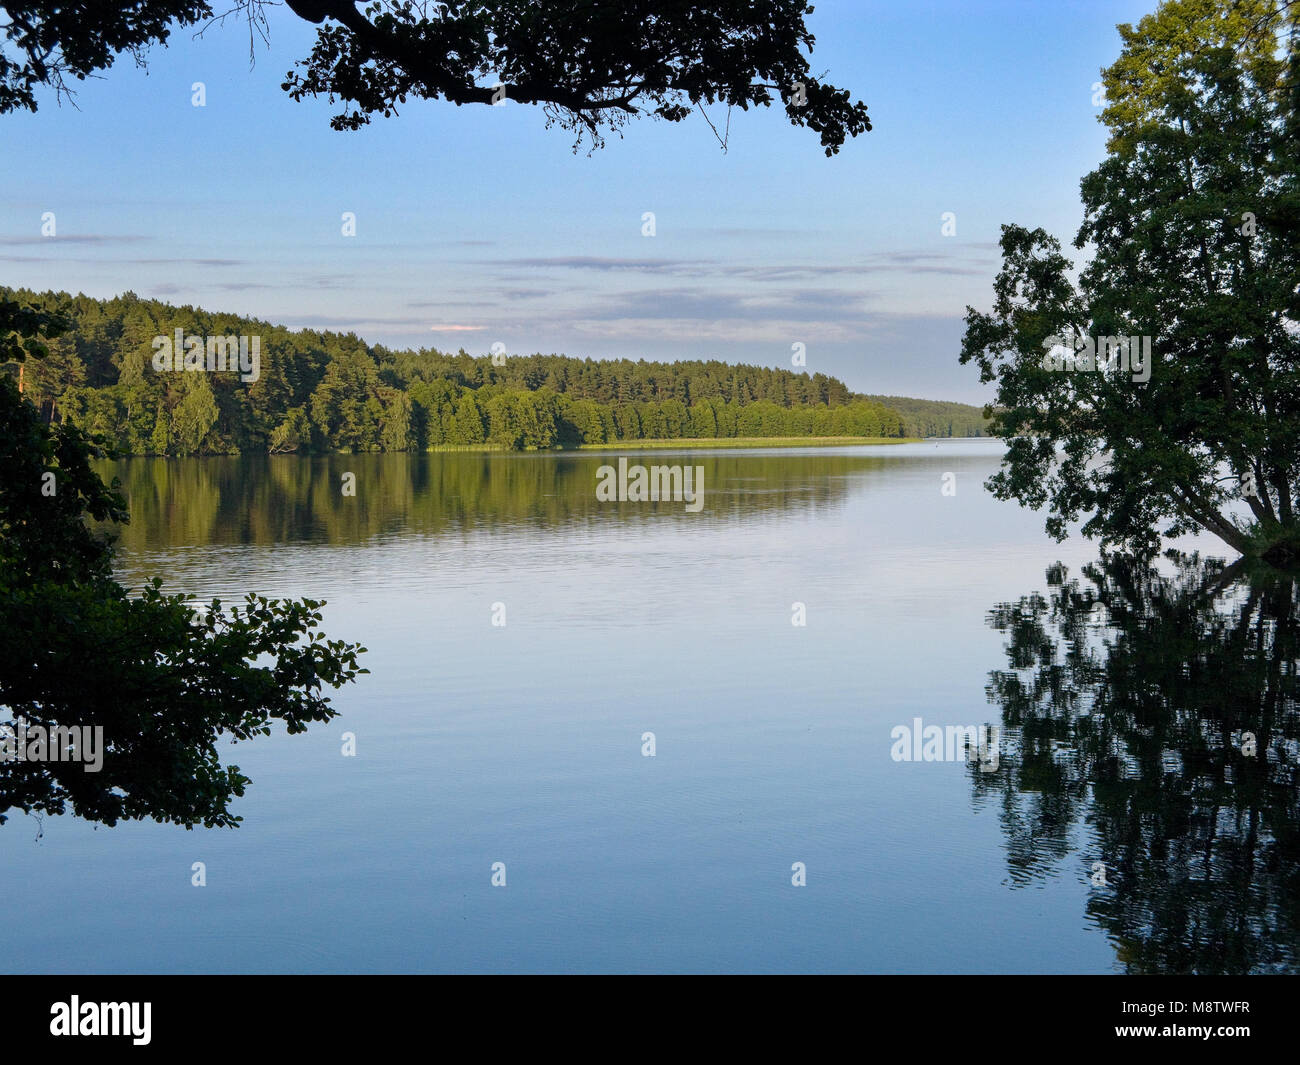 Dybrzk lake. Les pinèdes de Tuchola, province de Poméranie, Pologne, l'Europe. Banque D'Images